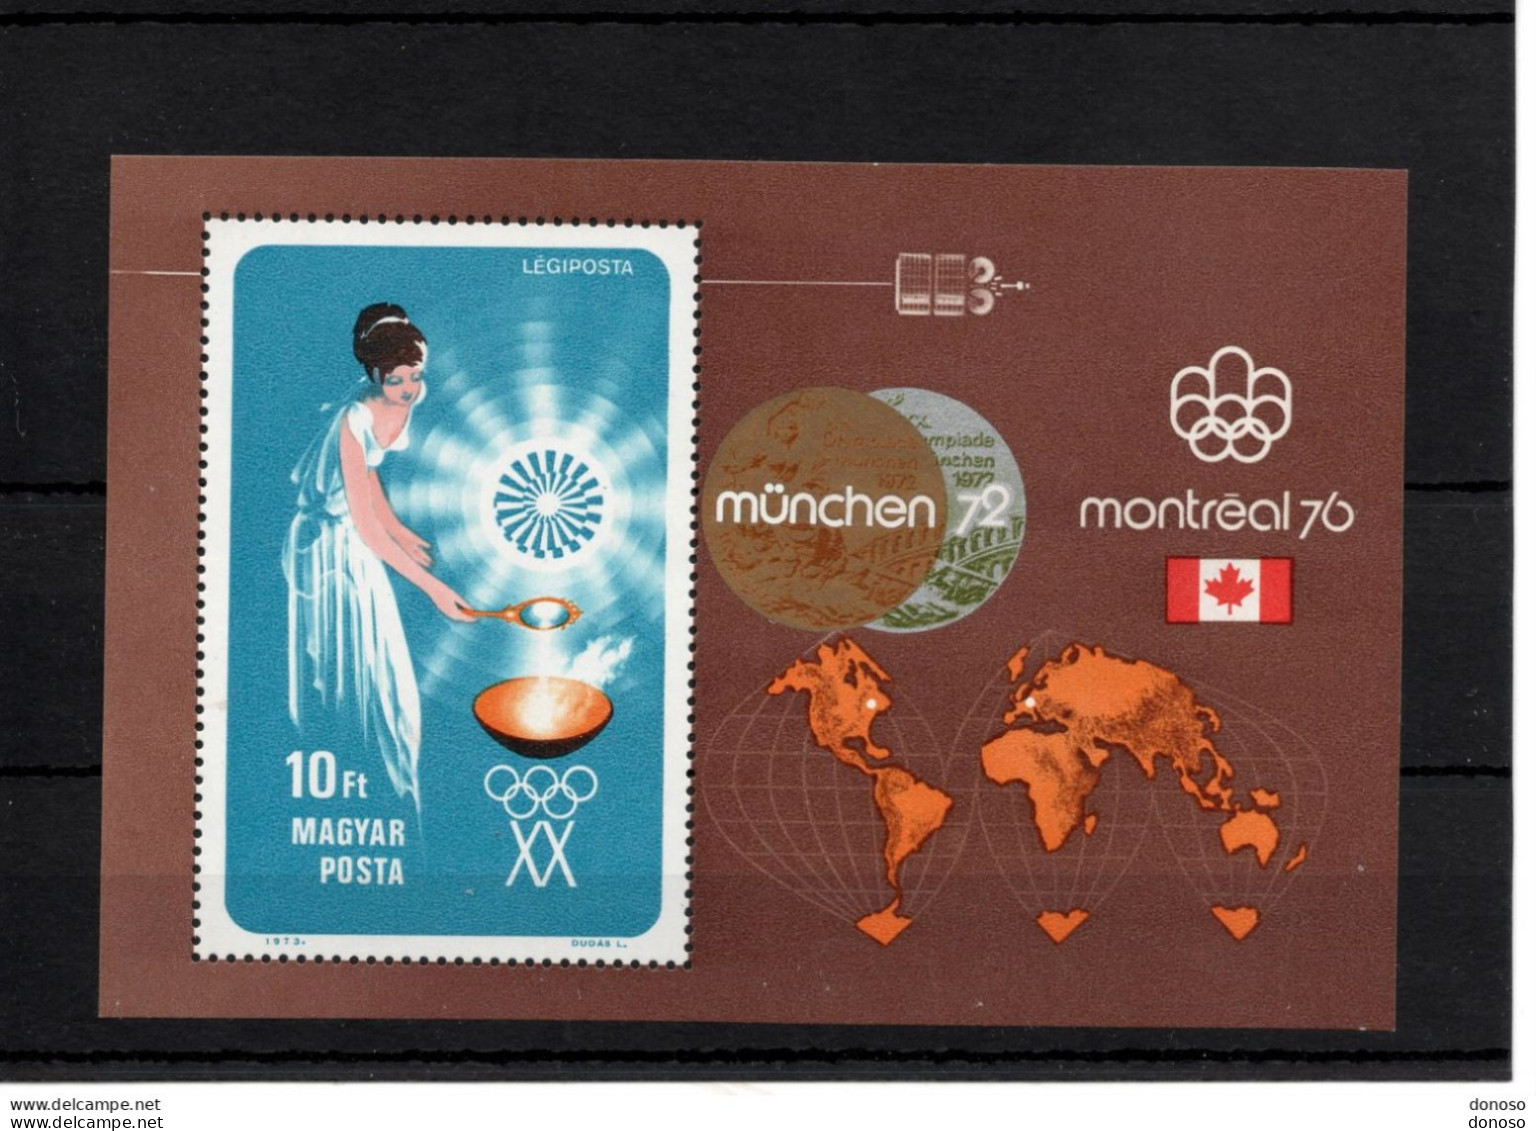 HONGRIE 1973 JEUX OLYMPIQUES DE MUNICH Yvert BF 102, Michel Block 96 NEUF** MNH Cote 10 Euros - Hojas Bloque